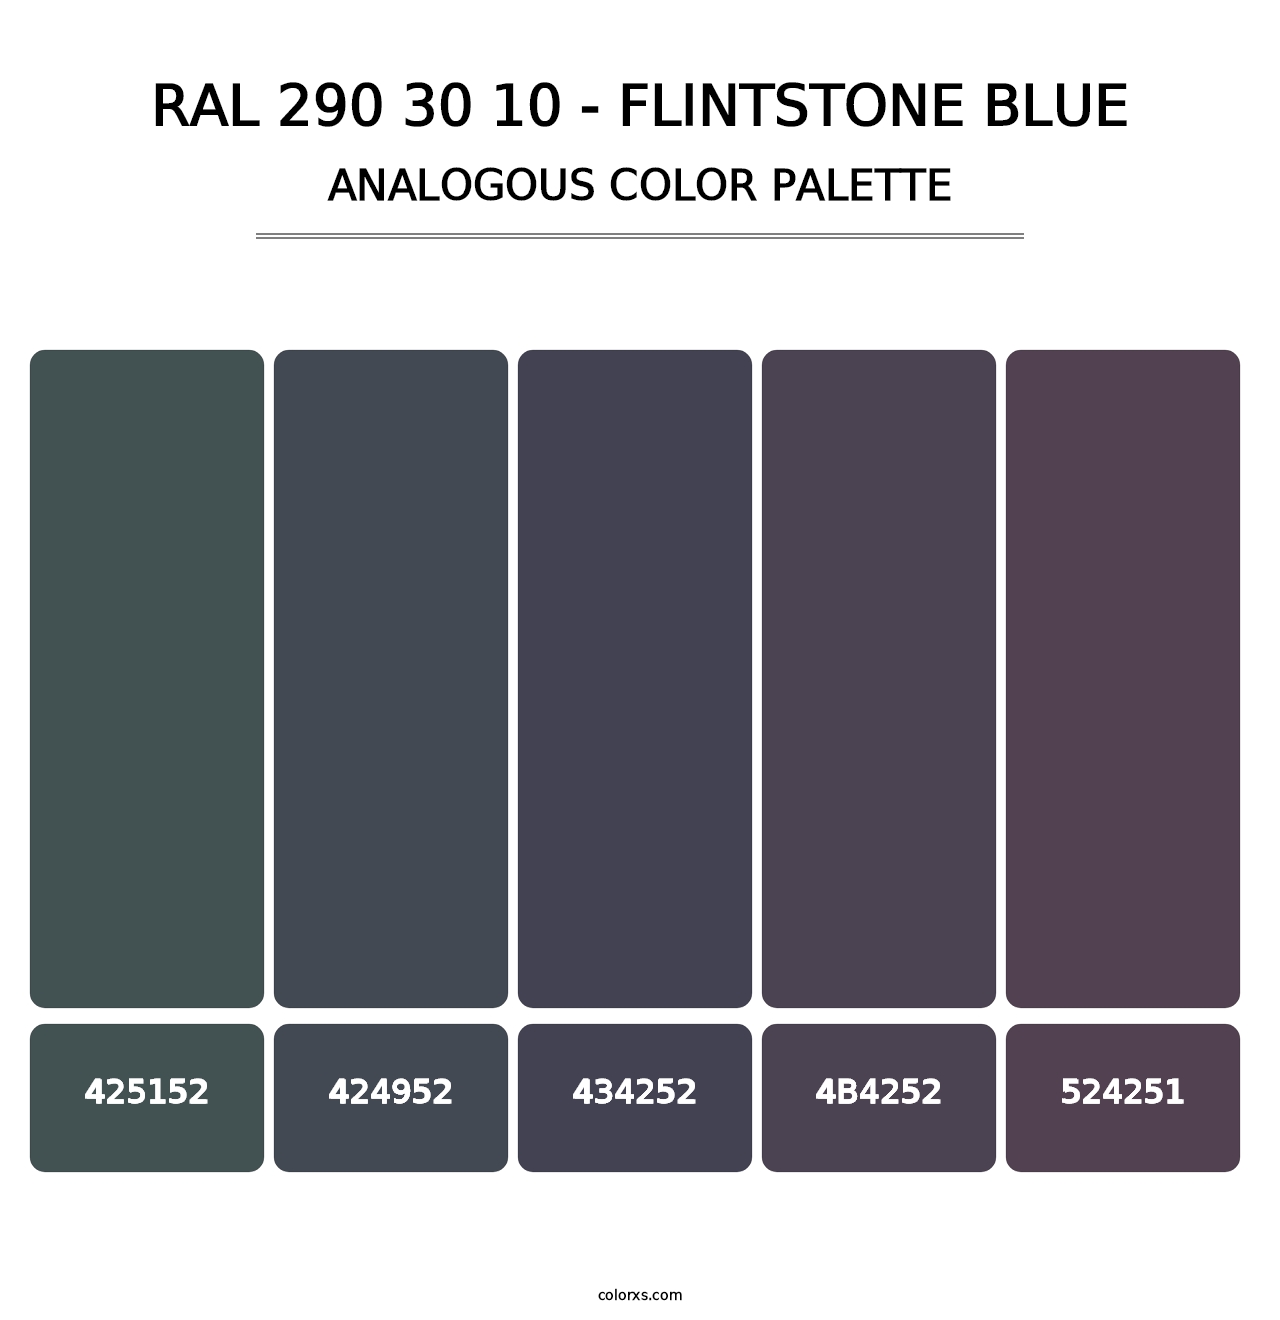 RAL 290 30 10 - Flintstone Blue - Analogous Color Palette